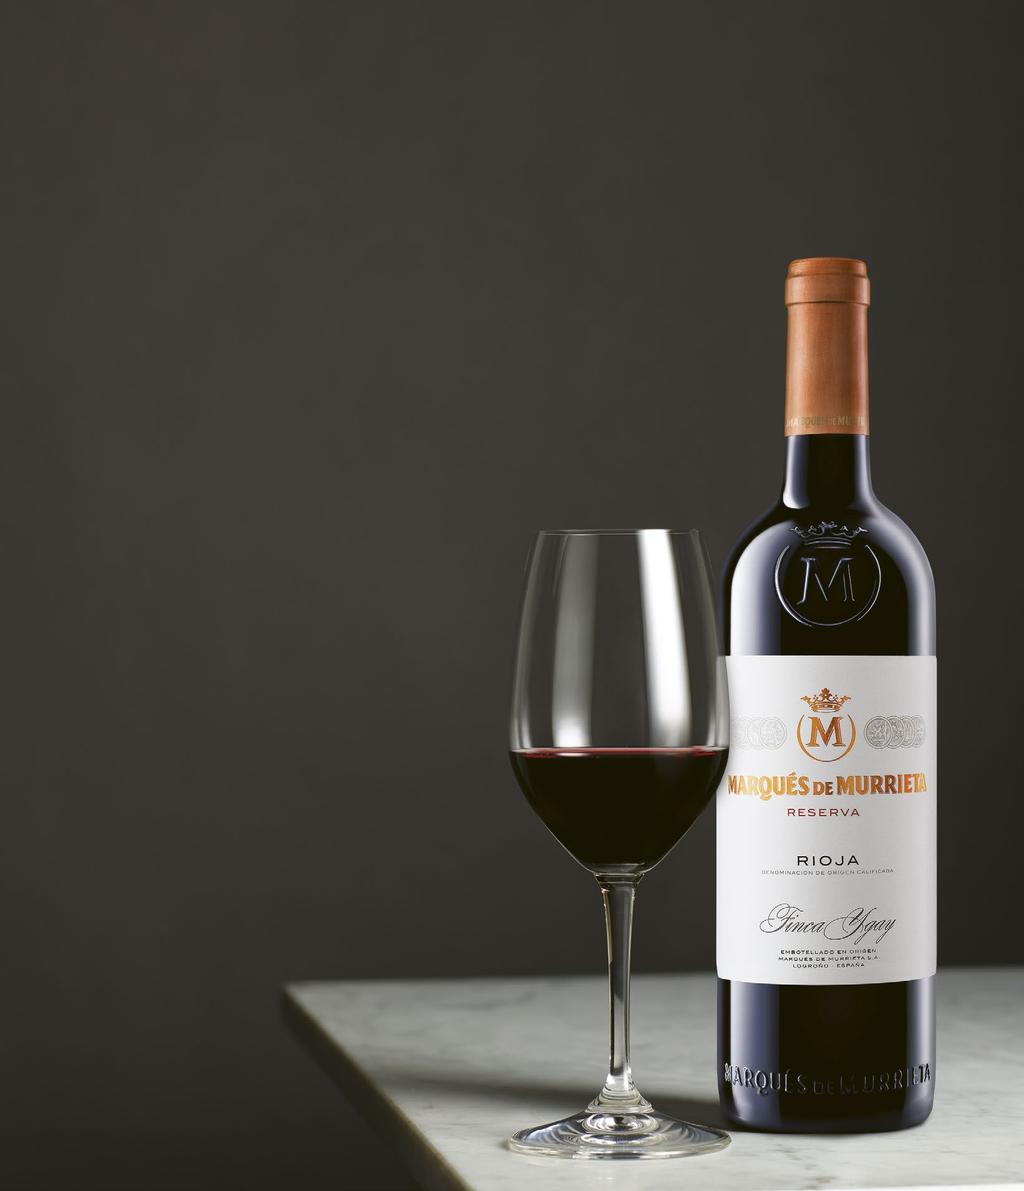 Vinmakaren María Vargas anses vara en av Spaniens främsta, hon blev bland annat utnämnd till Best Winemaker of the Year i Tim Atkins Rioja-rapport 2017. Marqués de Murrieta Reserva 2014 Art.